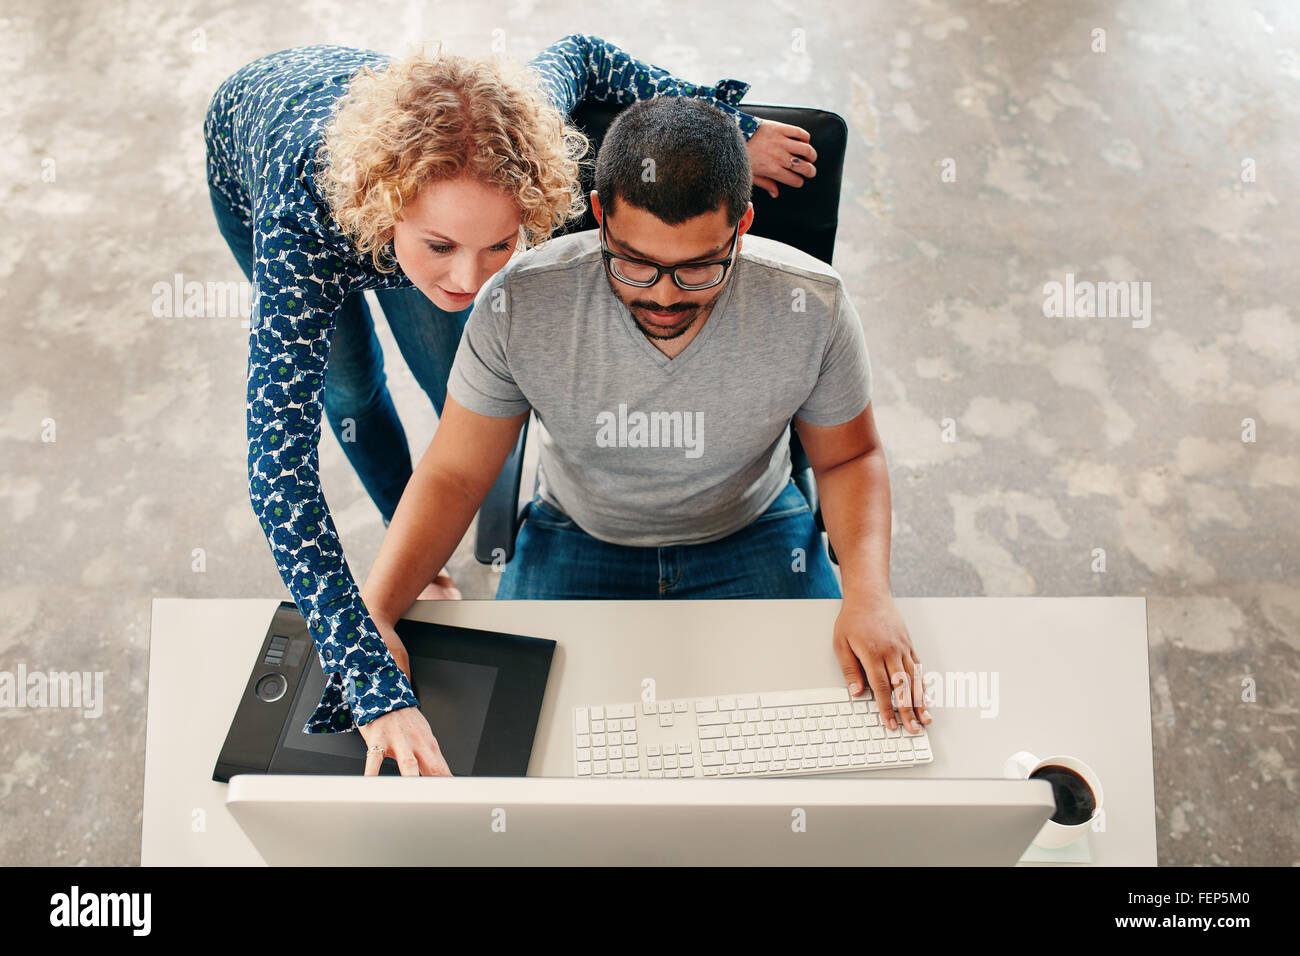 Vue de dessus coup de jeune homme assis à son bureau travaillant sur pc et tablette graphique numérique avec femme pointant sur moniteur. Homme gr Banque D'Images